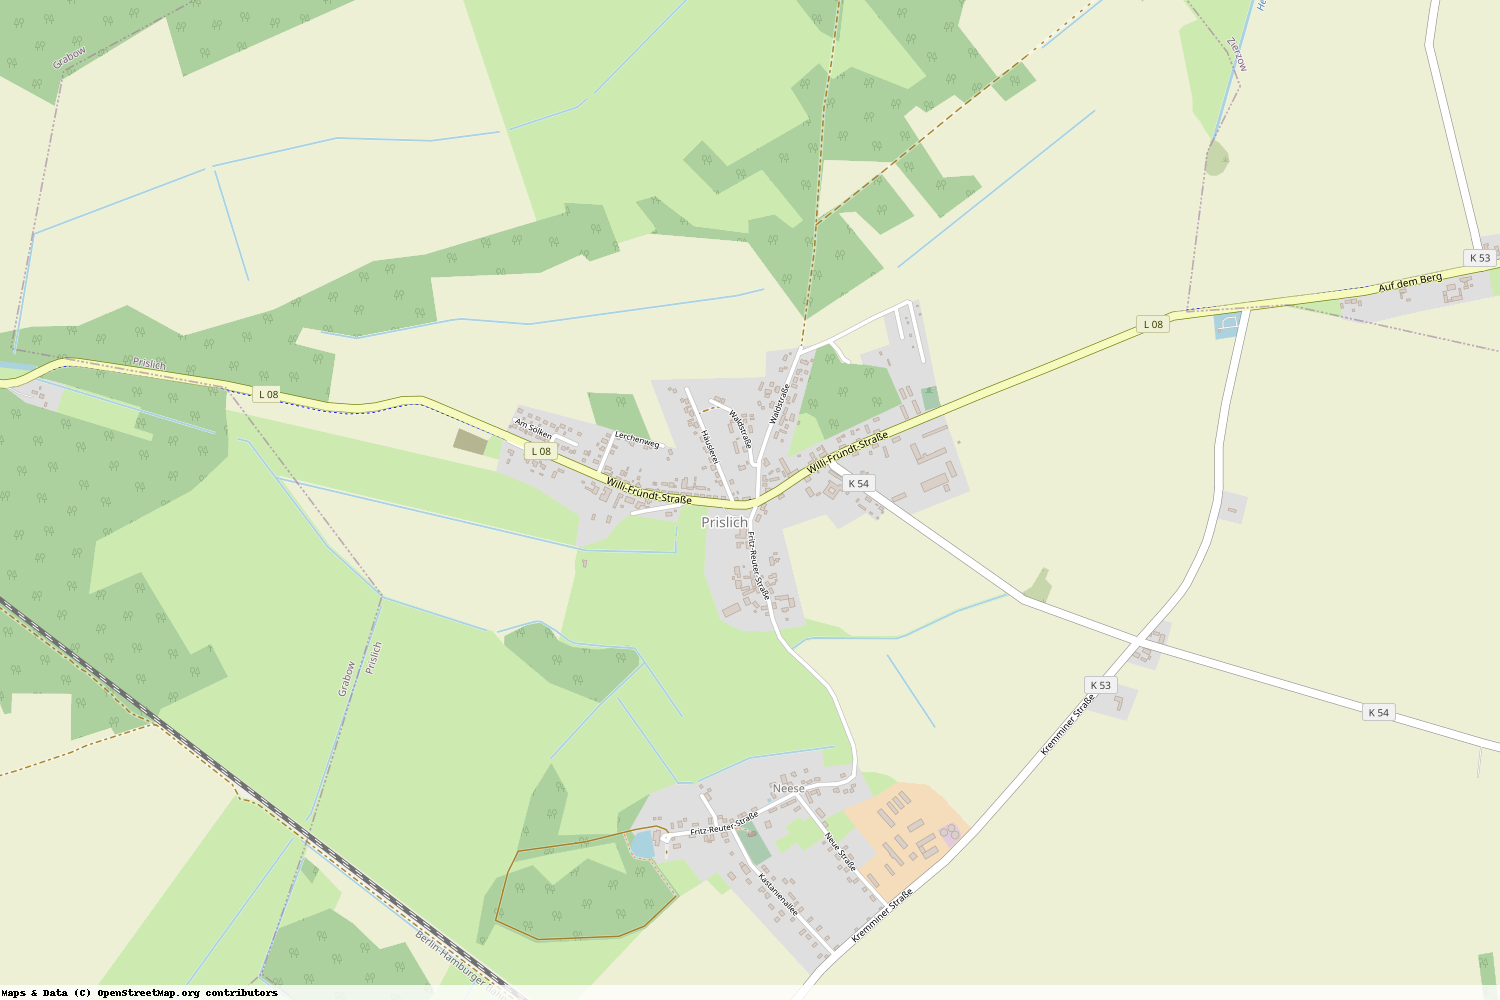 Ist gerade Stromausfall in Mecklenburg-Vorpommern - Ludwigslust-Parchim - Prislich?